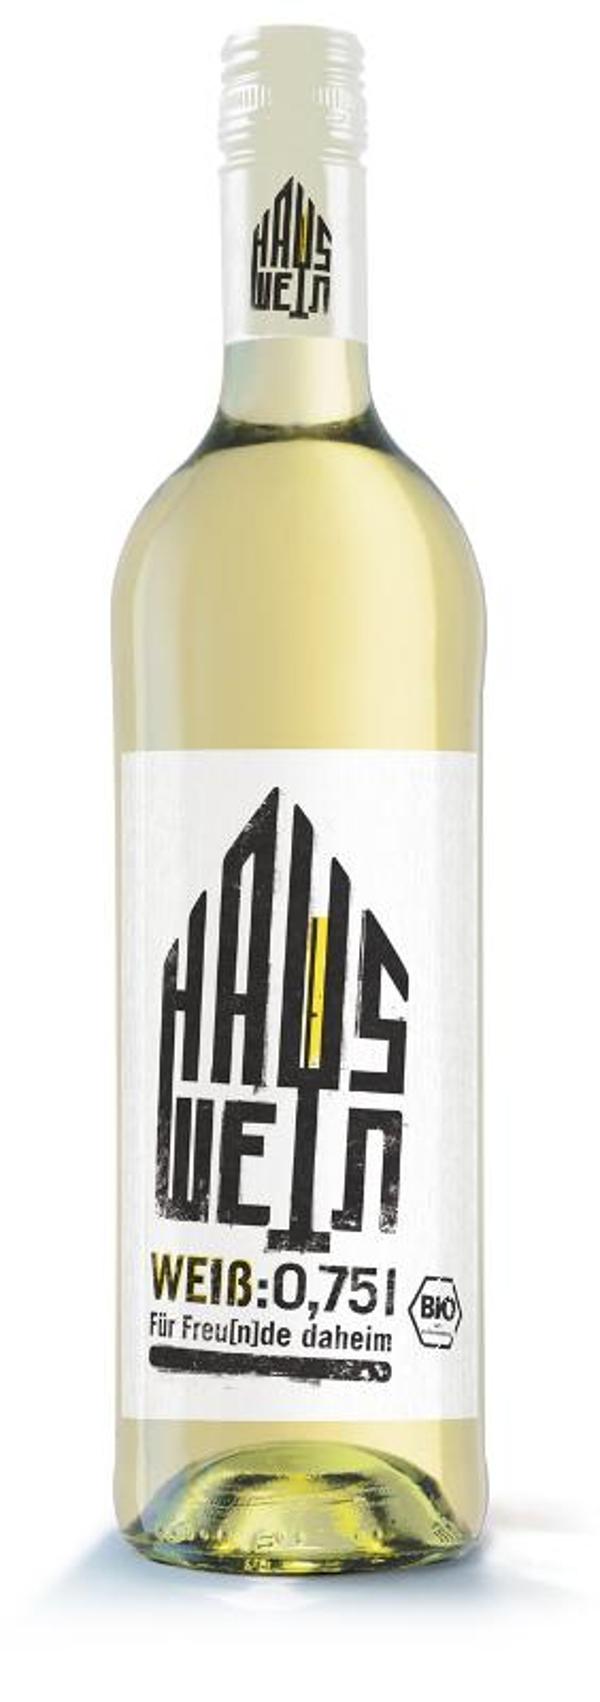 Produktfoto zu Hauswein weiß, halbtrocken - 0,75l